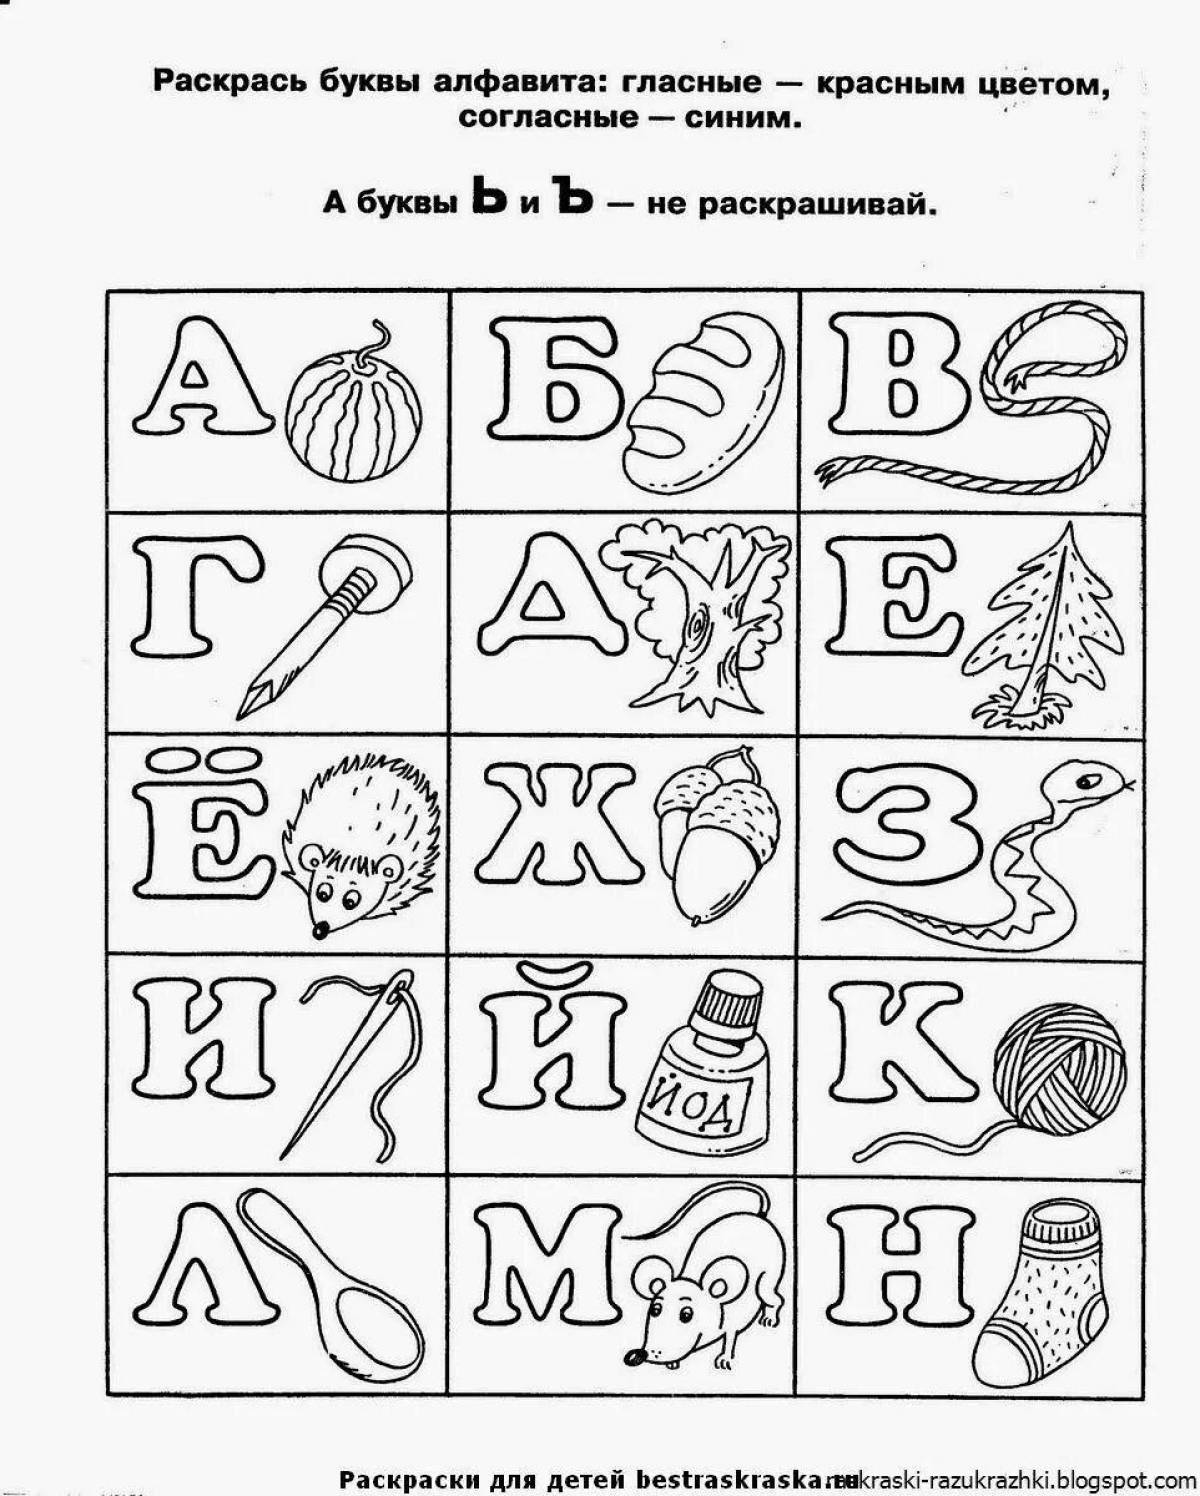 Раскраски русского алфавита с картинками от ColouringBook.ru учим все 33 буквы играючи и просто!